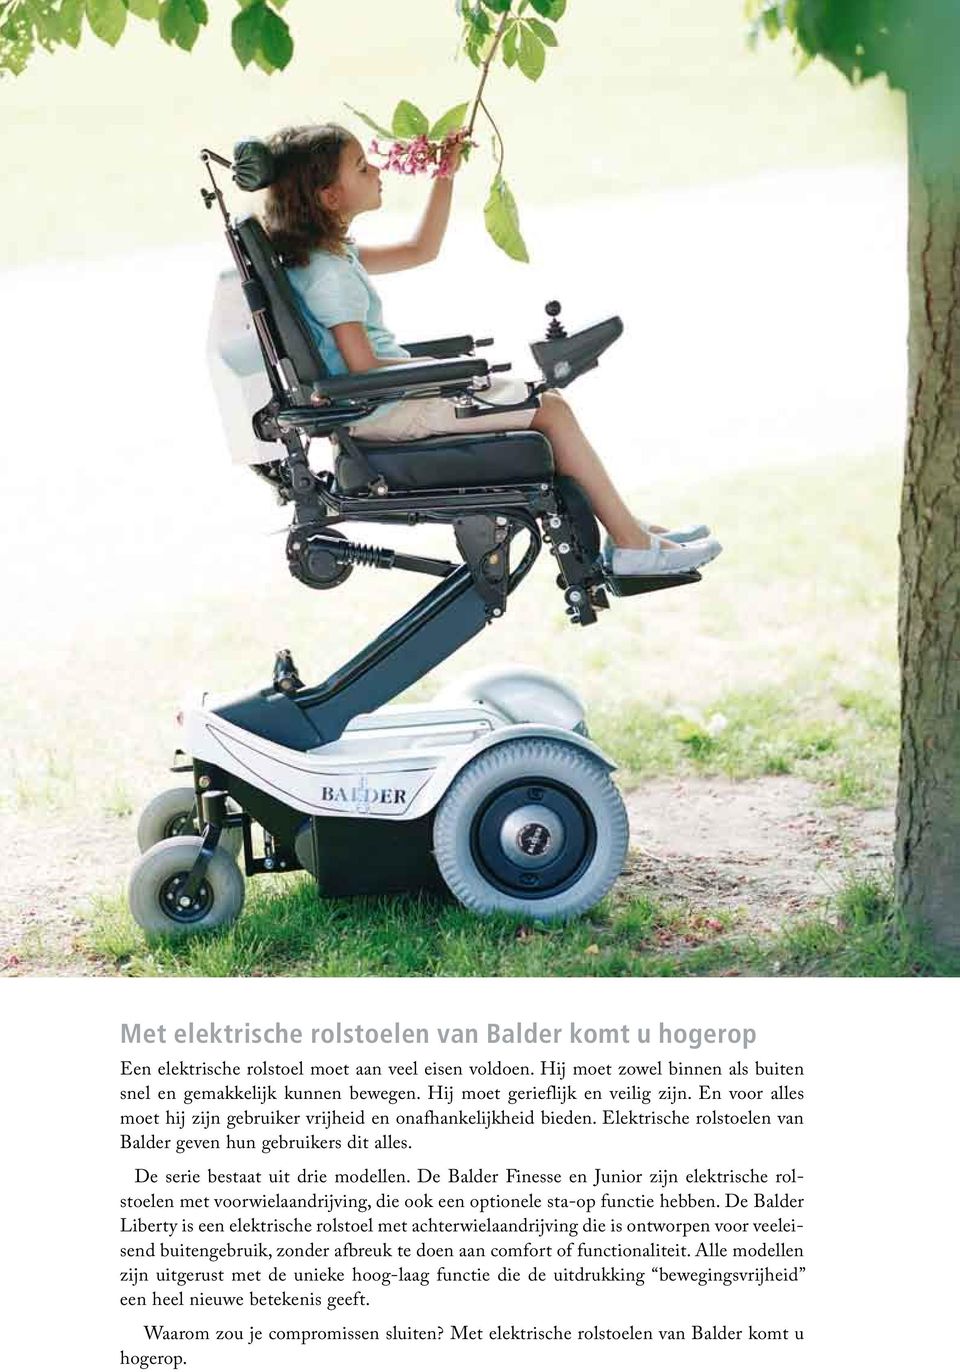 De serie bestaat uit drie modellen. De Balder Finesse en Junior zijn elektrische rolstoelen met voorwielaandrijving, die ook een optionele sta-op functie hebben.